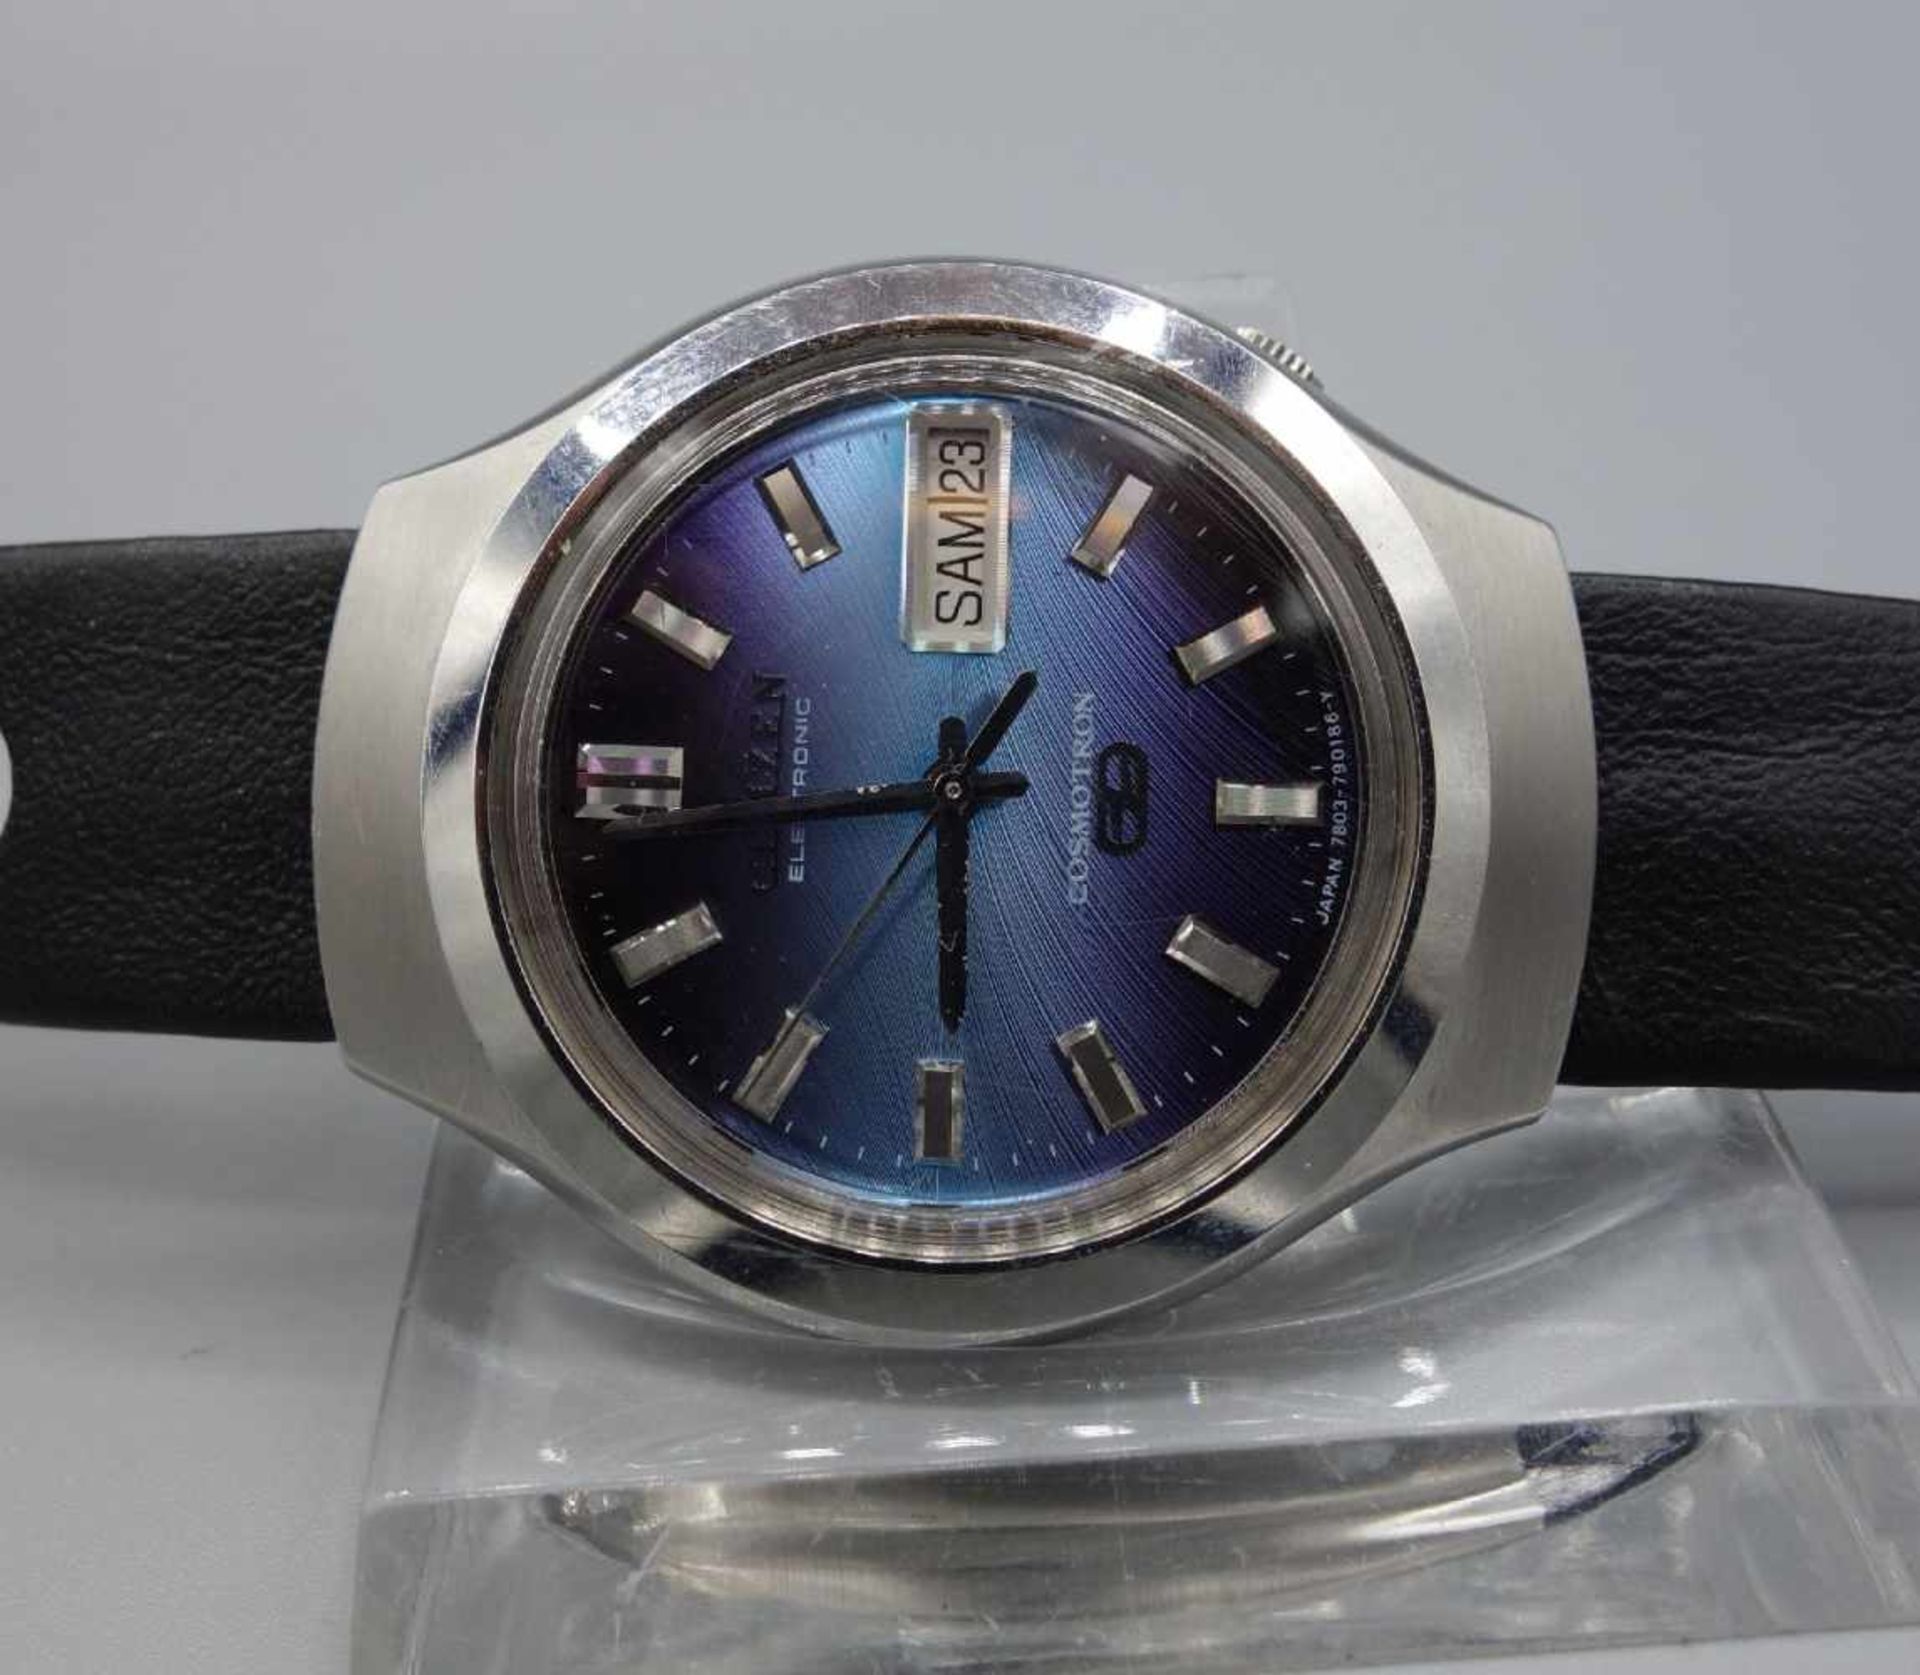 VINTAGE ARMBANDUHR - CITIZEN COSMOTRON / vintage wristwatch, wohl 1970er Jahre, Citizen Watch - Bild 3 aus 6